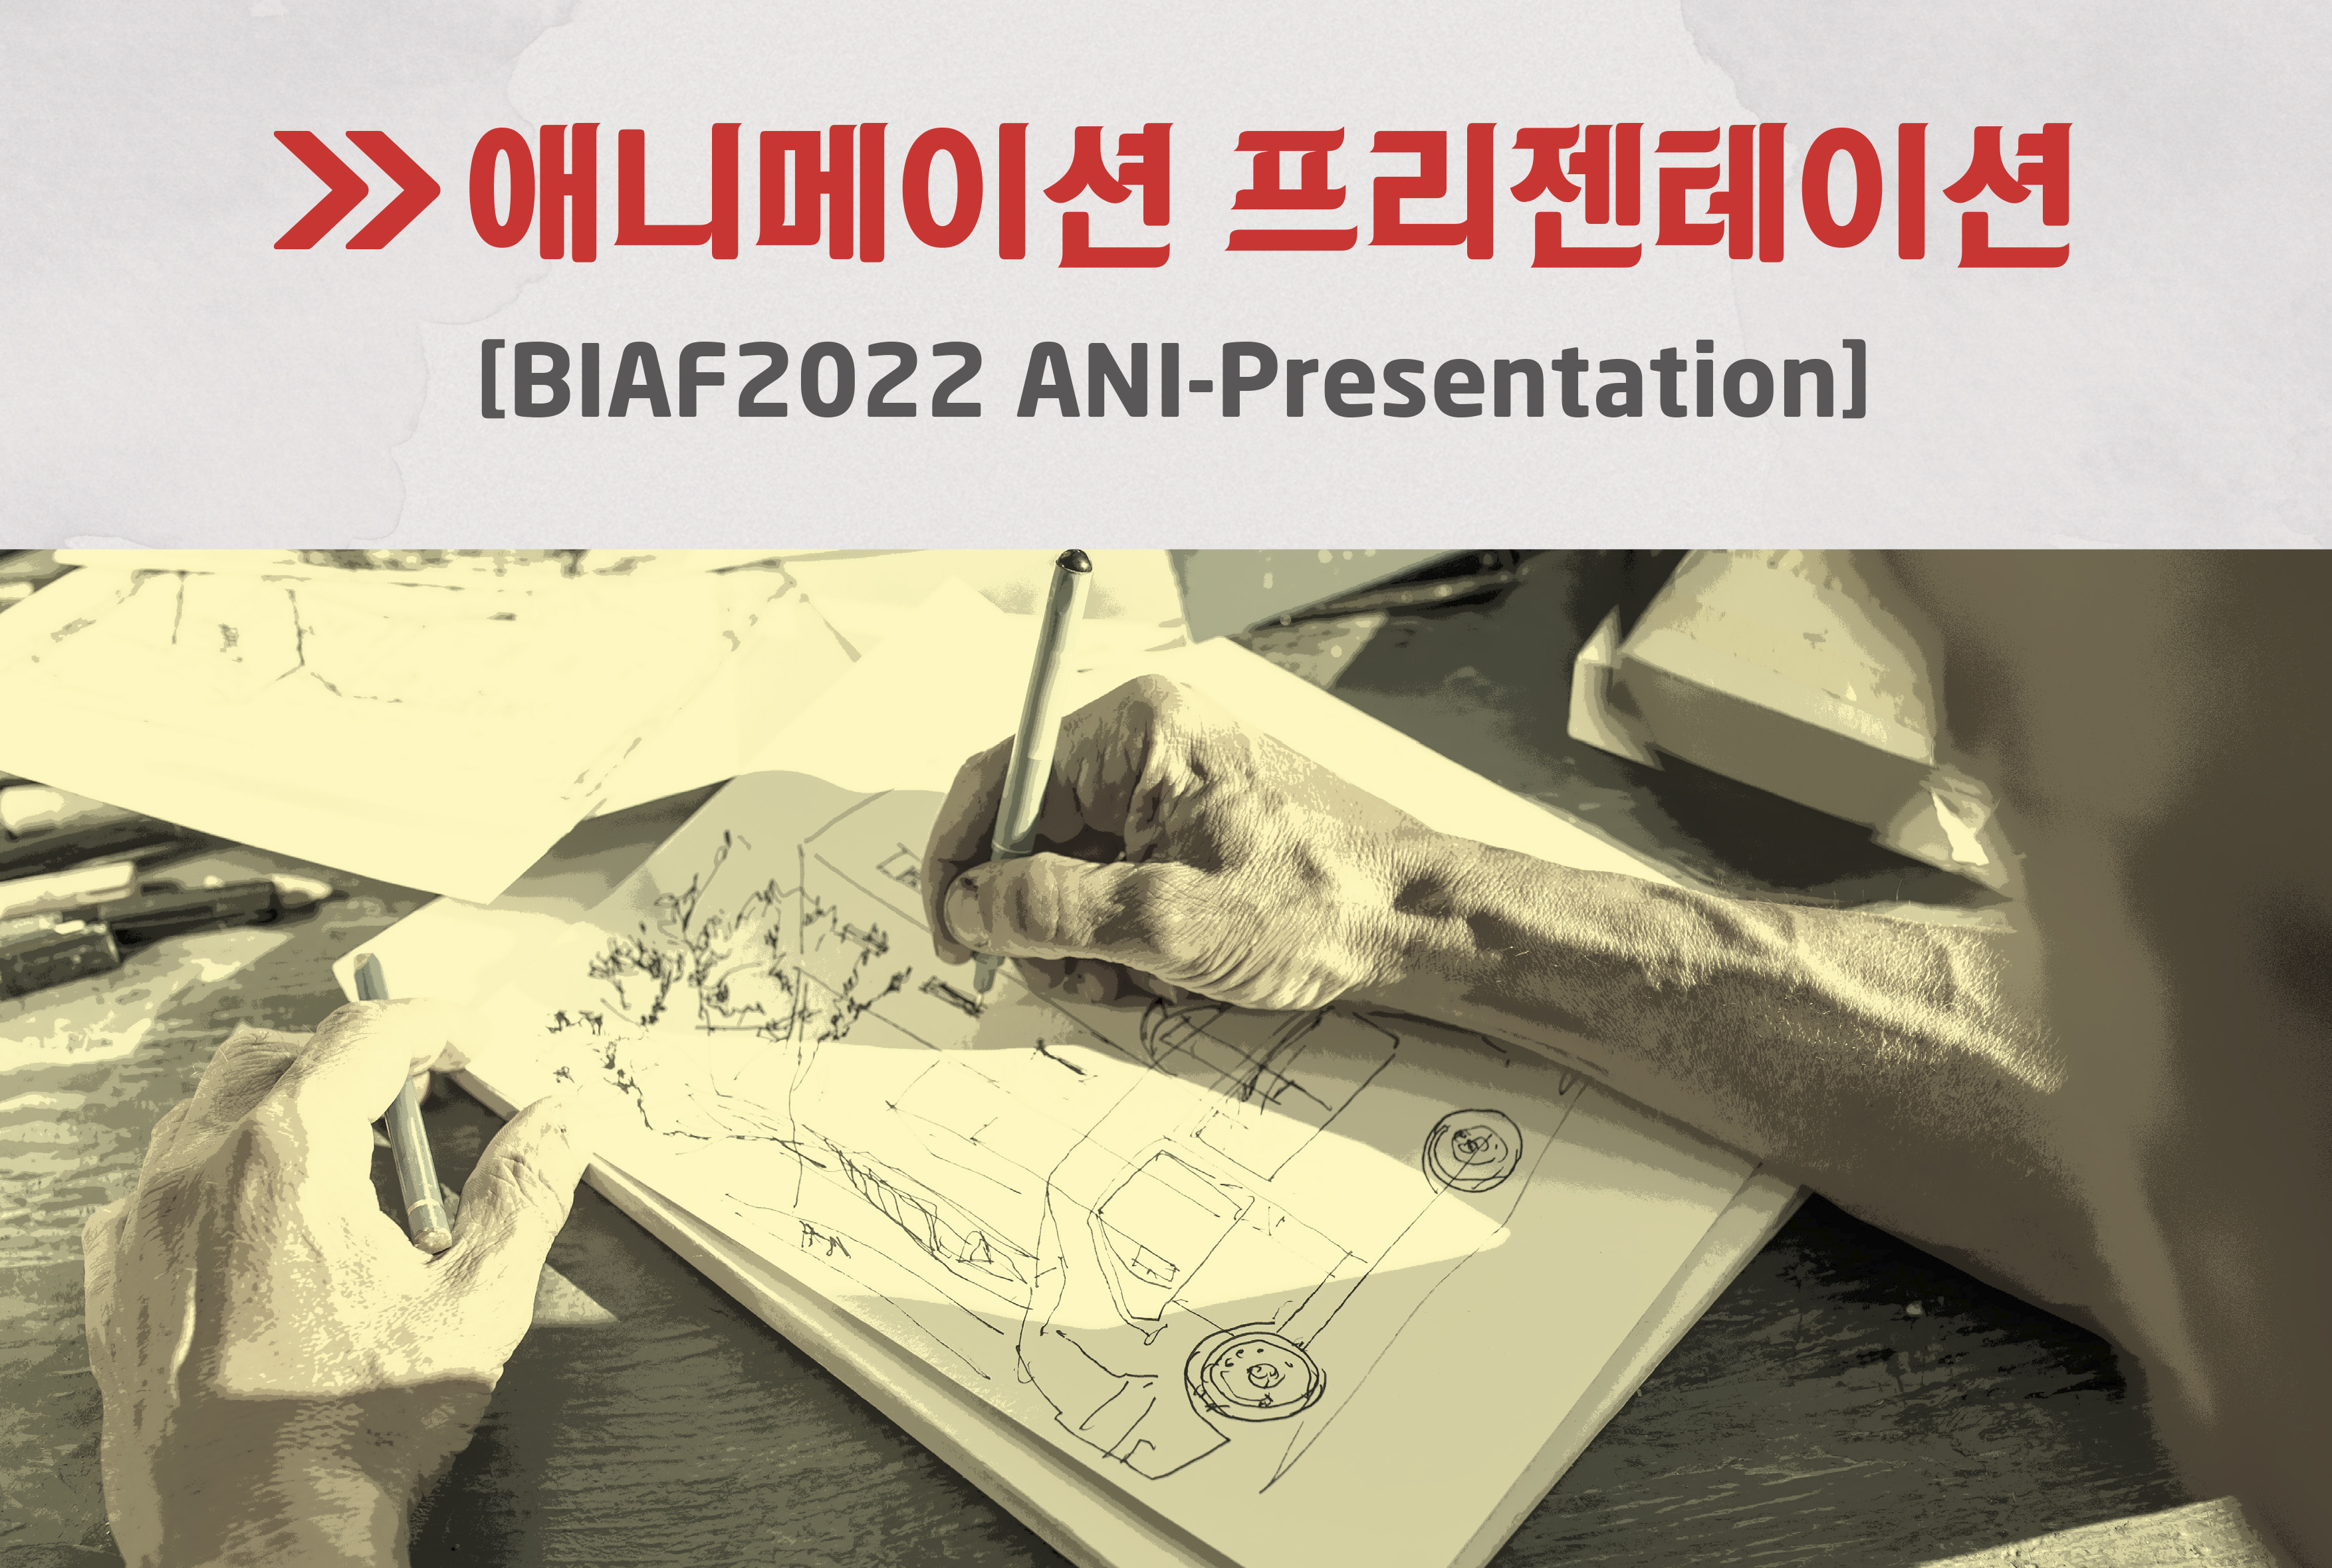 BIAF2022 ANI-Presentation